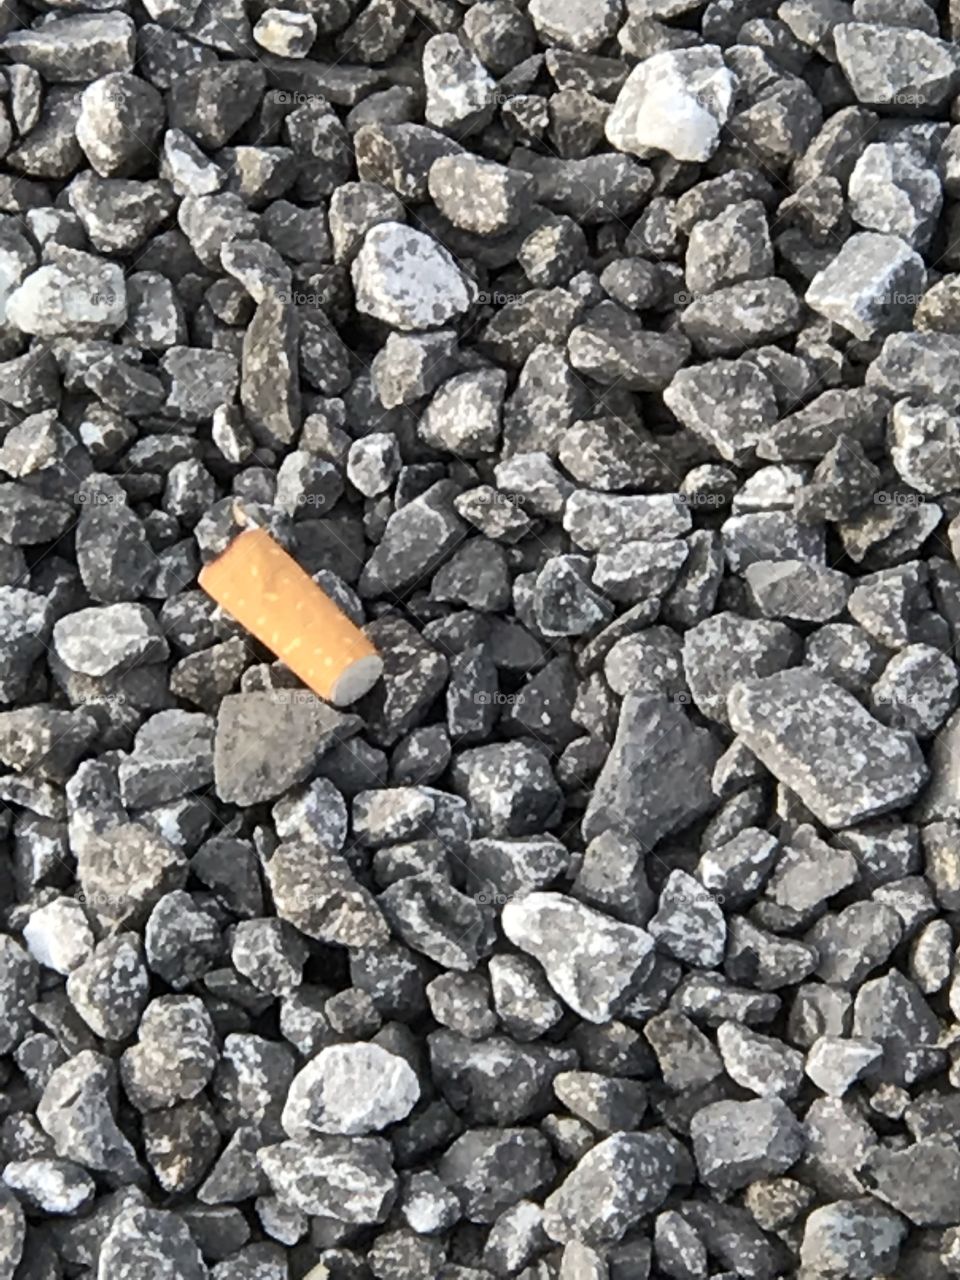 Cigarette butt thrown down on rock gravel in park